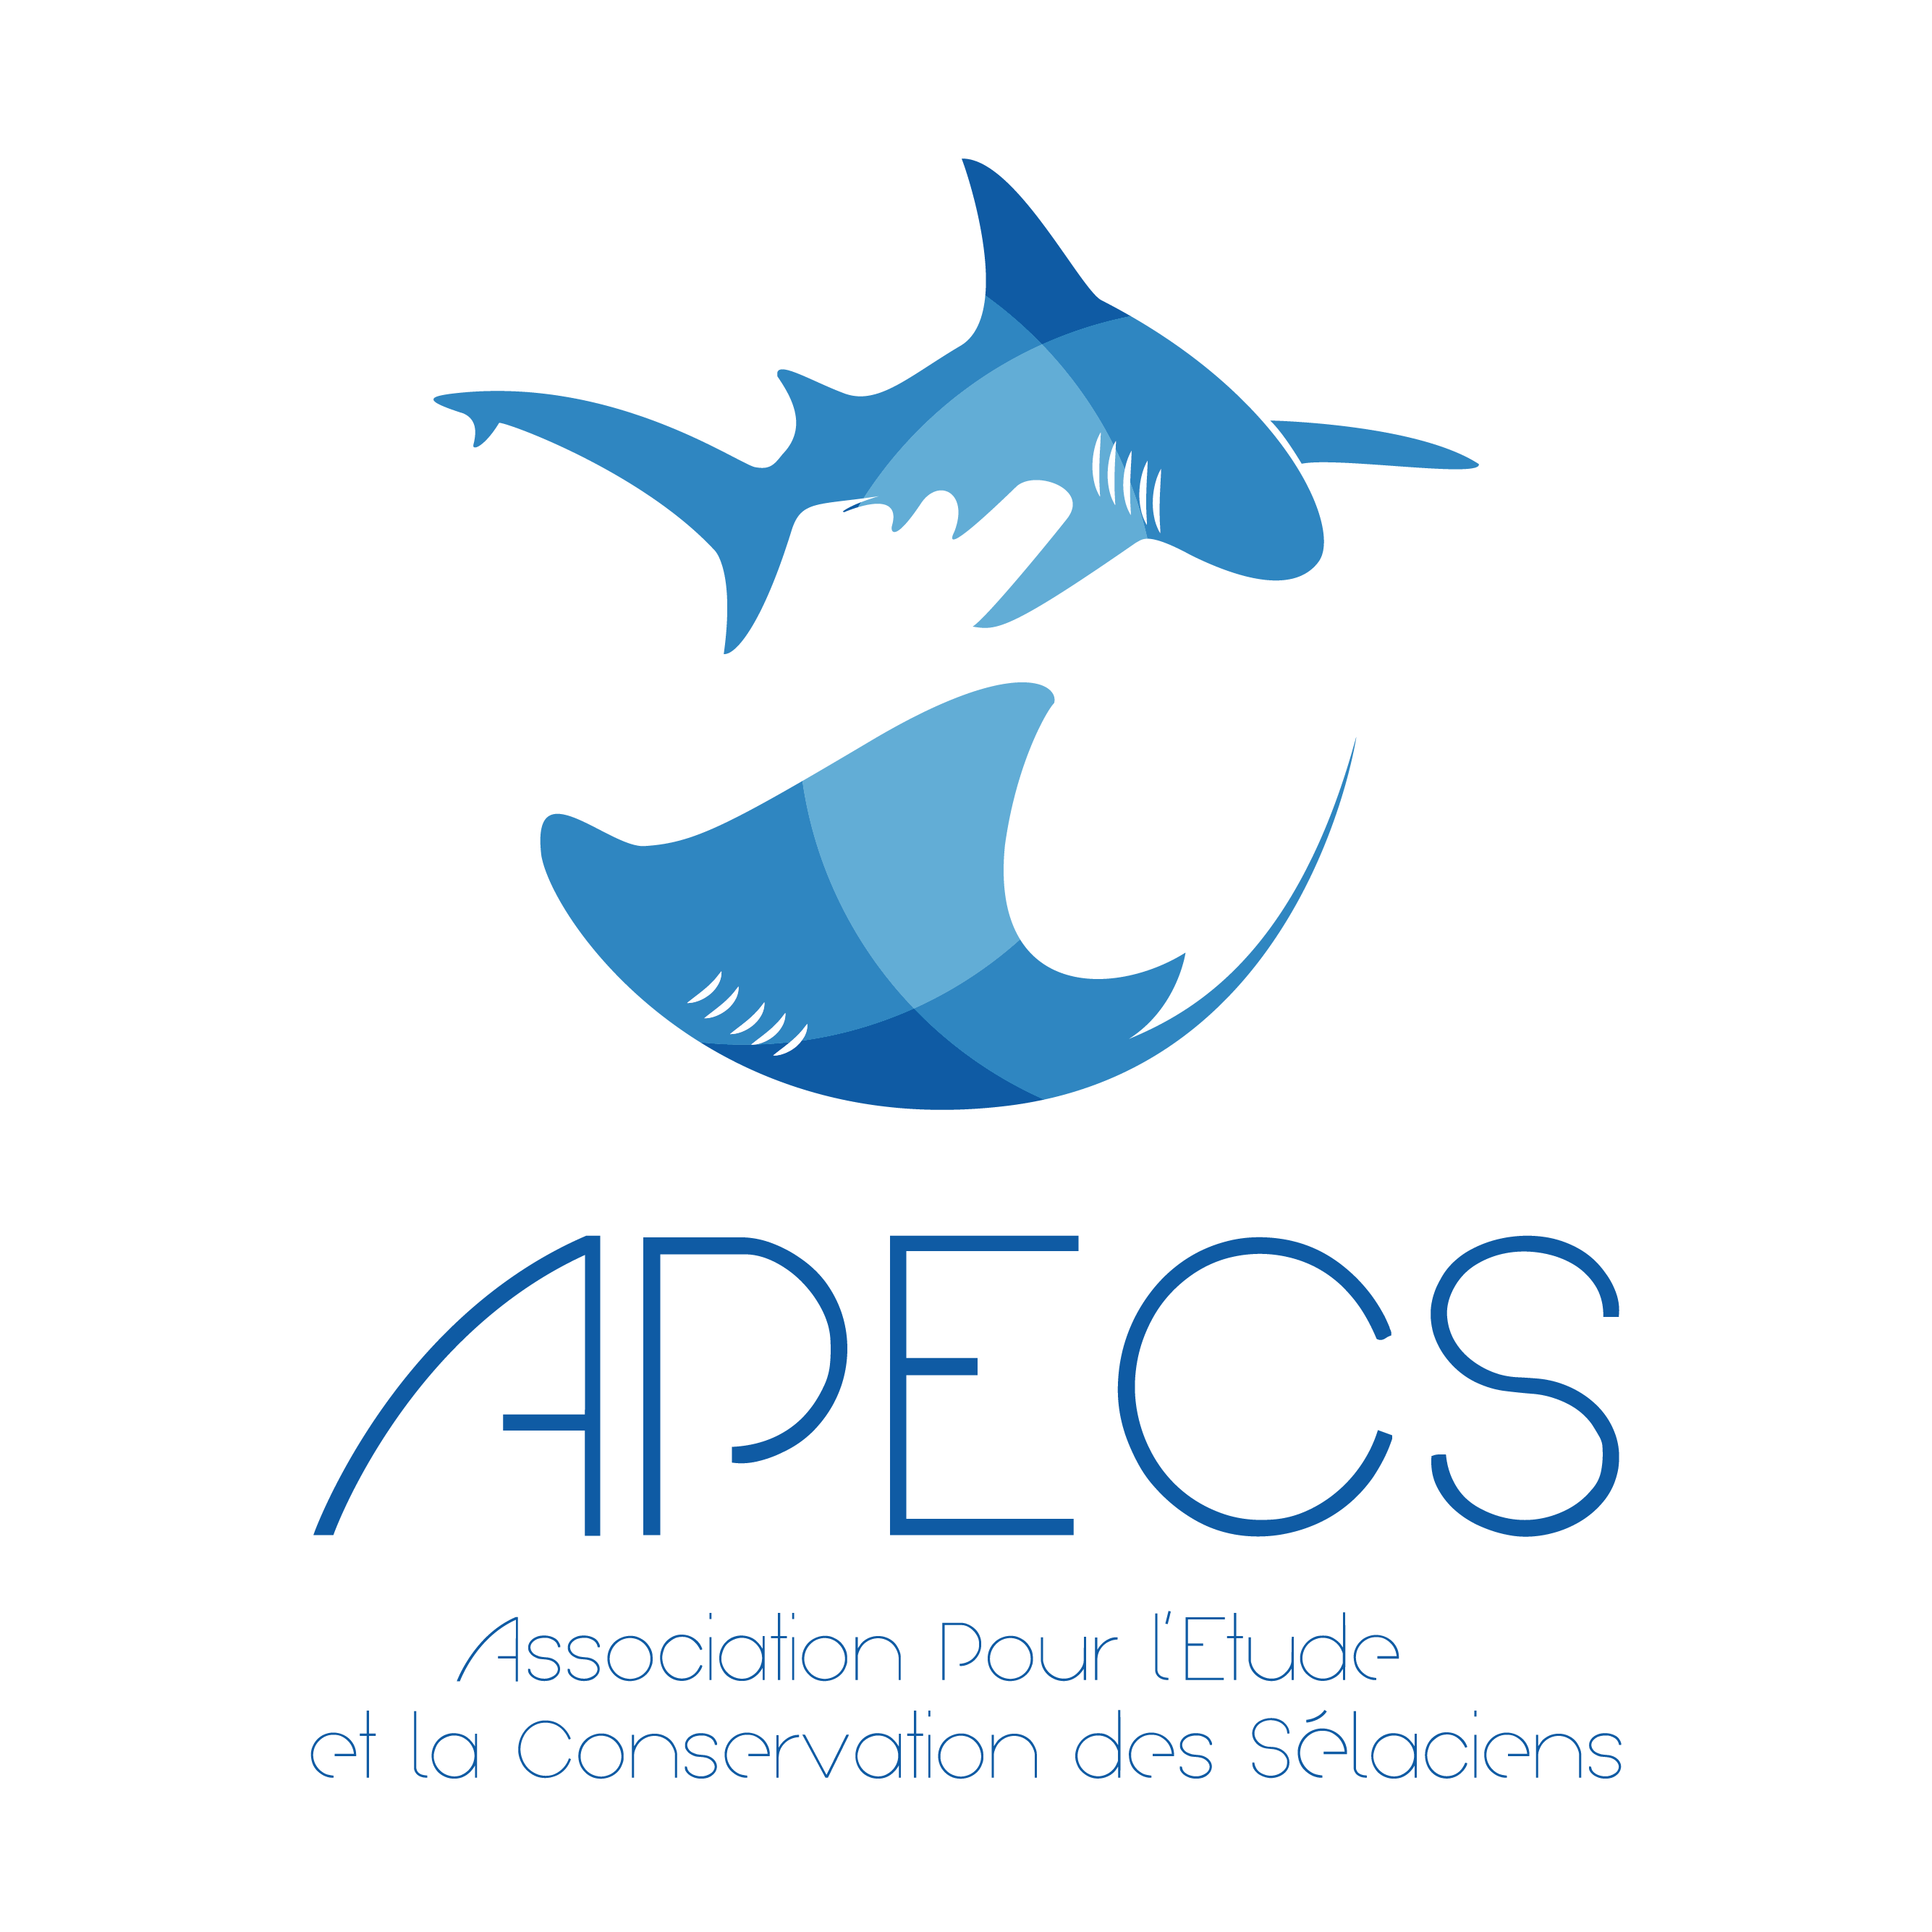 Association pour l’étude et la conservation des sélaciens - APECS